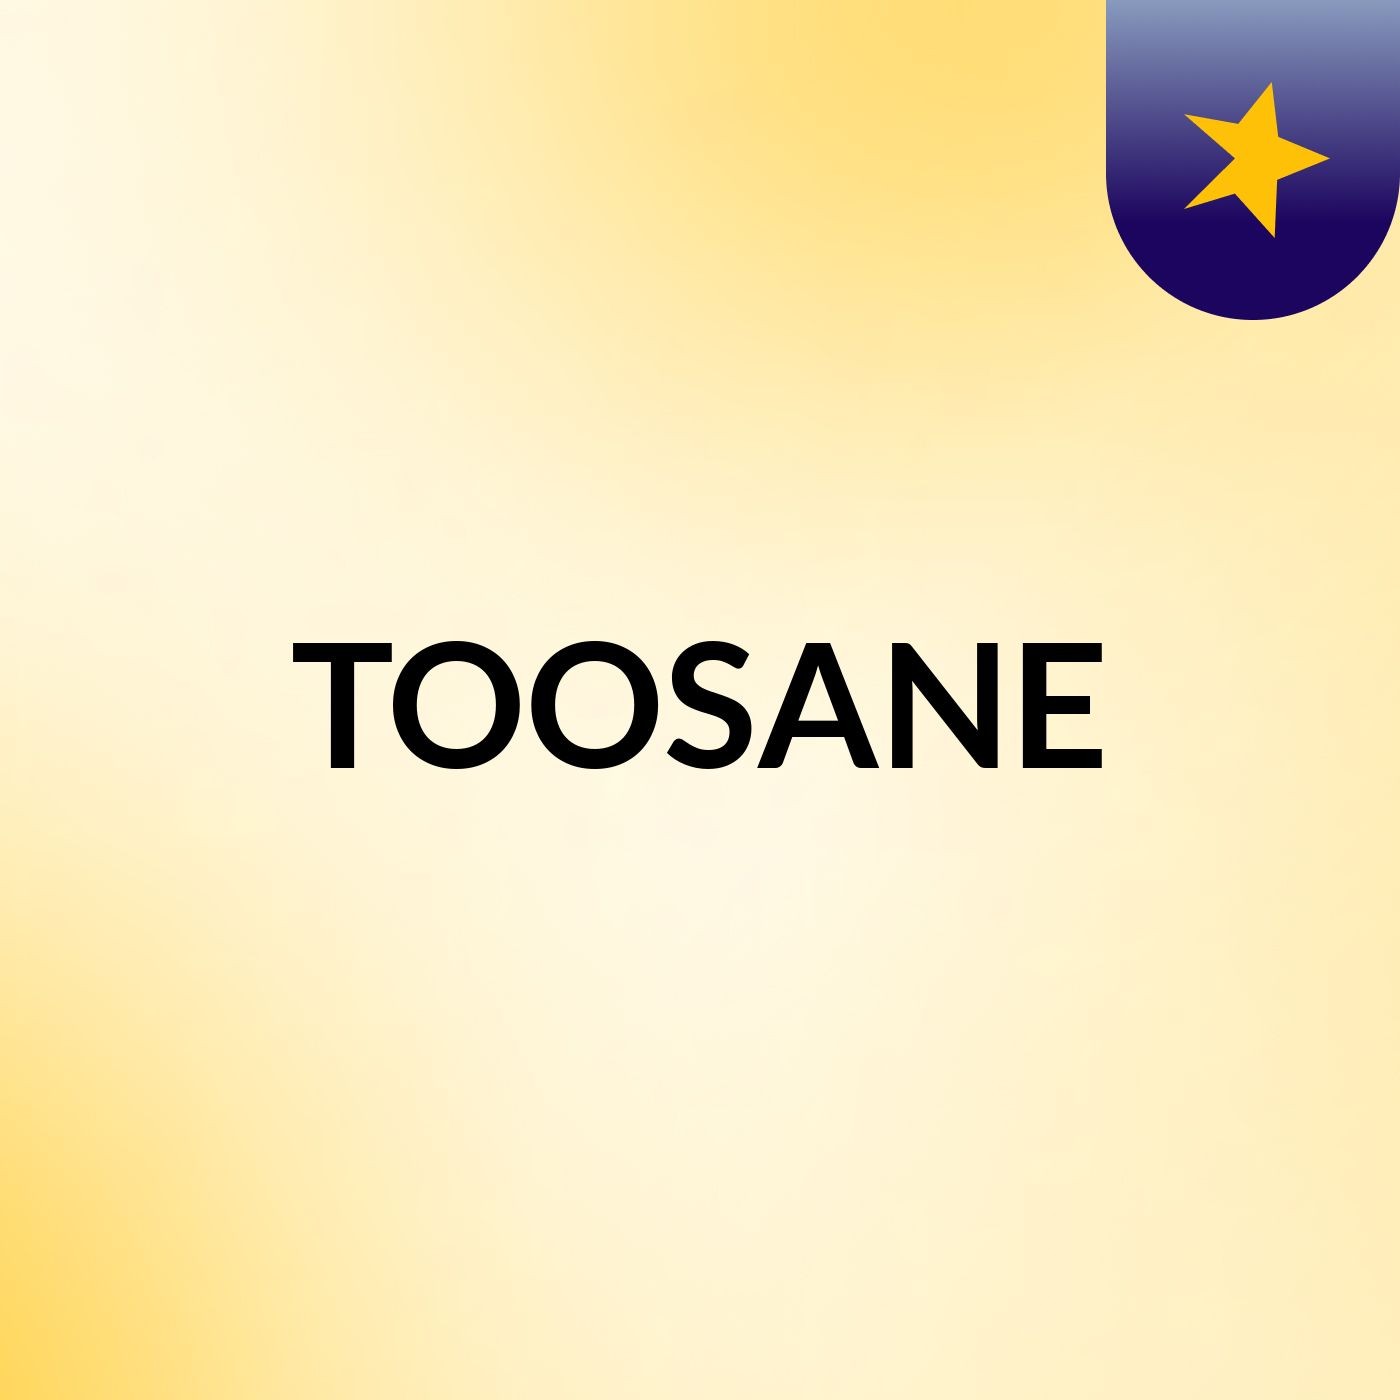 TOOSANE